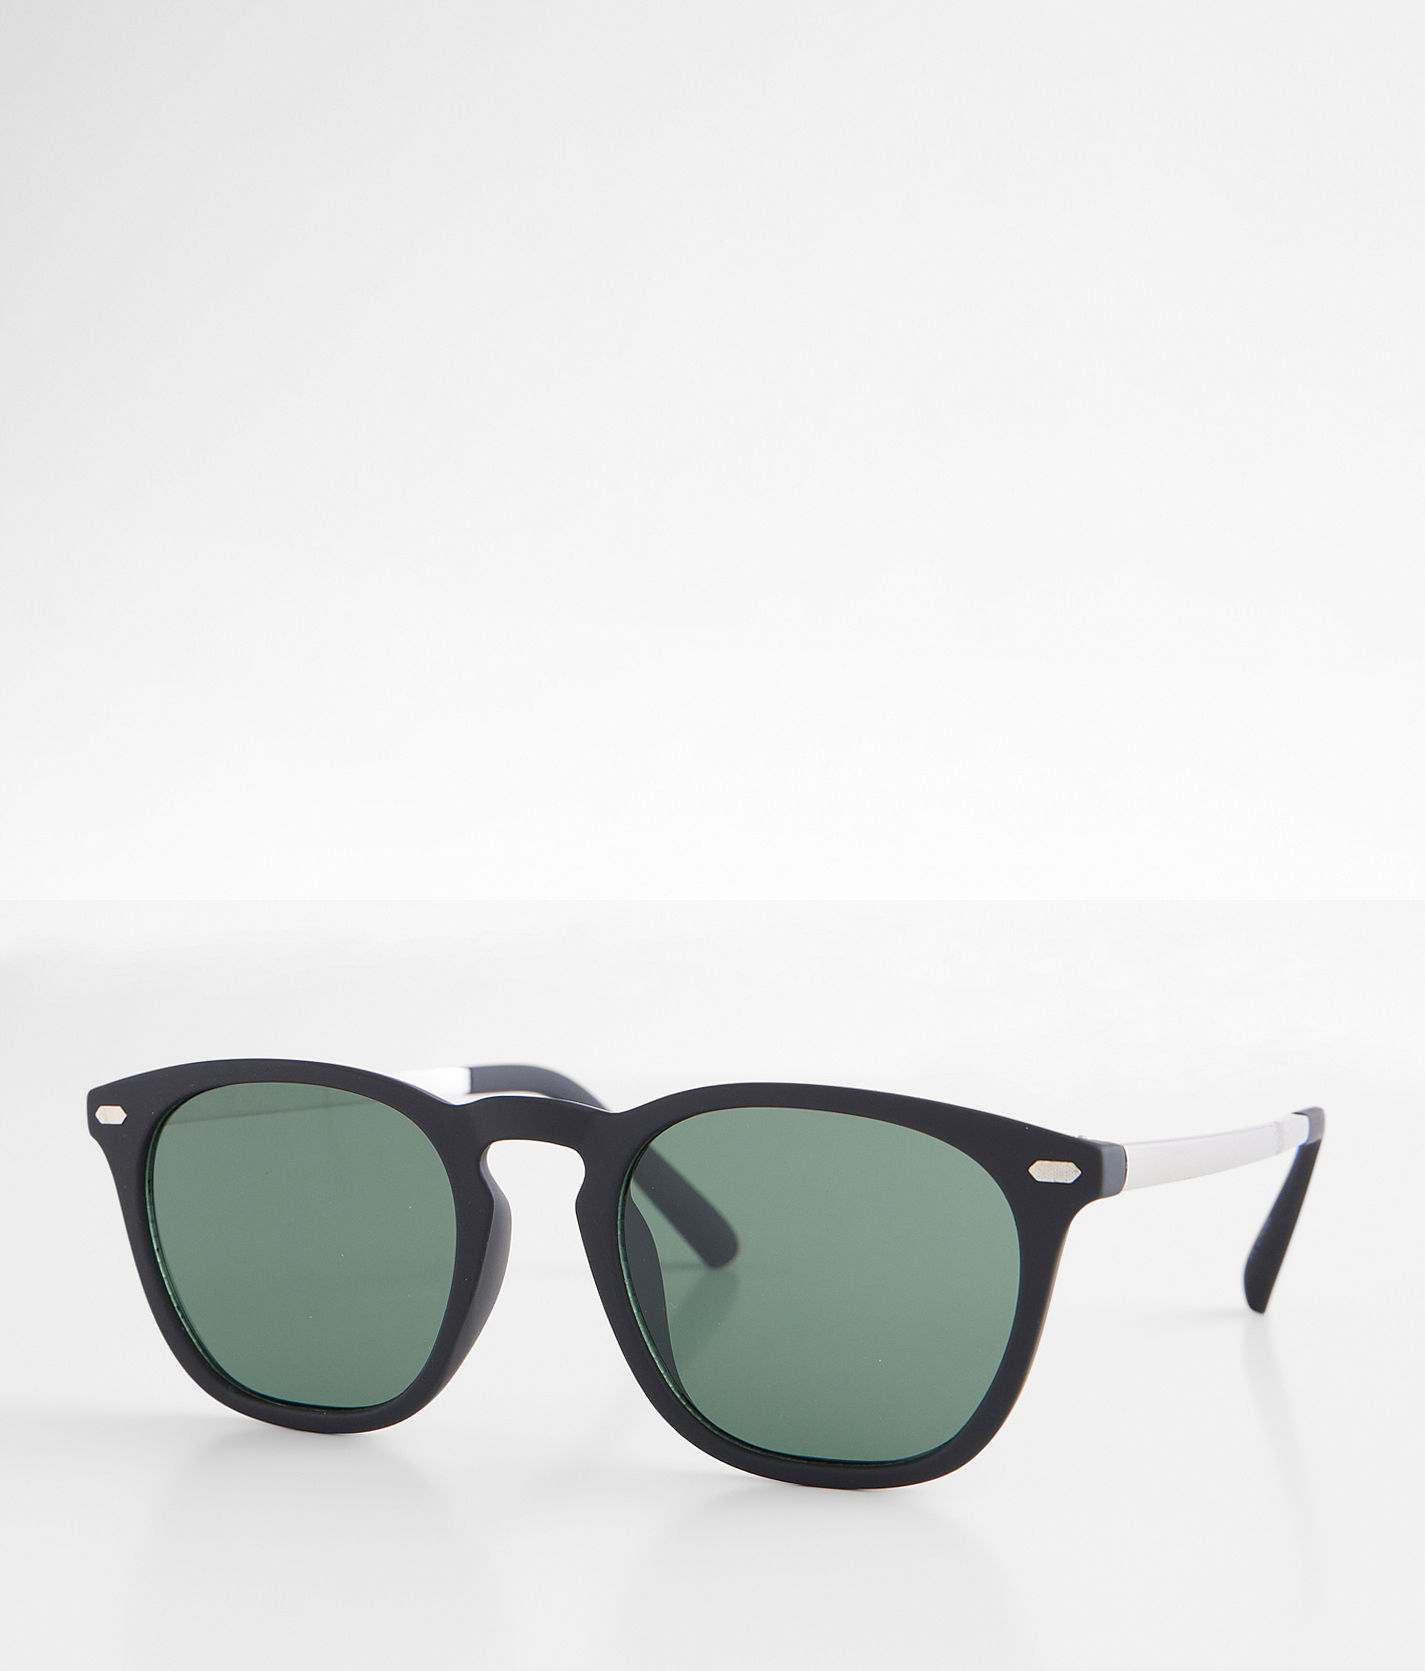 Bke Trend Sunglasses - Black , Men's